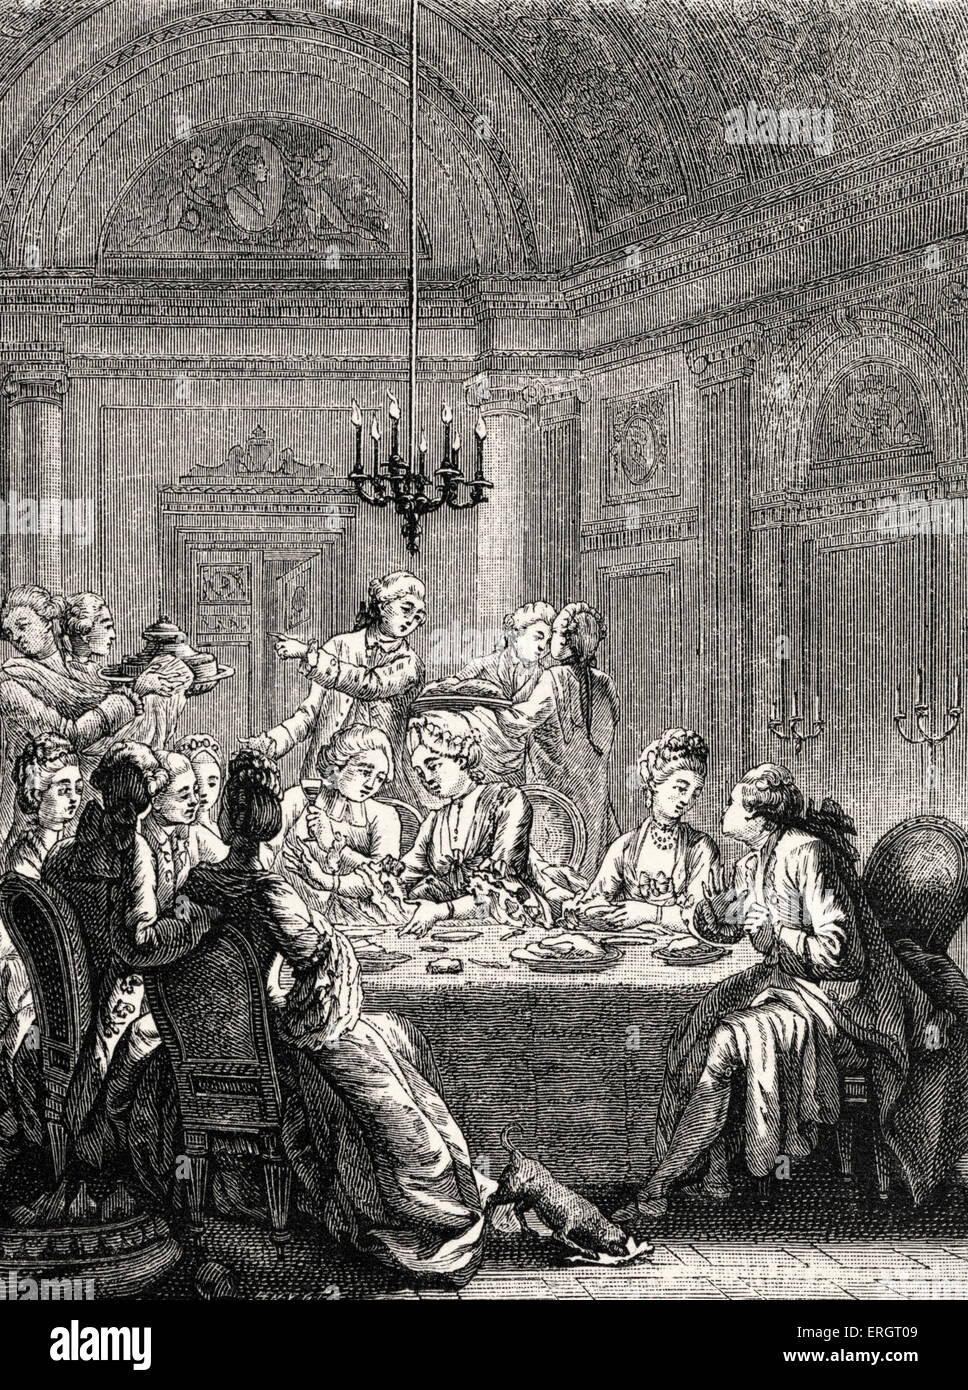 La vie quotidienne dans l'histoire française : un souper aristocratique du 18ème siècle en France pendant le règne de Louis XV. Haute Société / salle à manger Banque D'Images